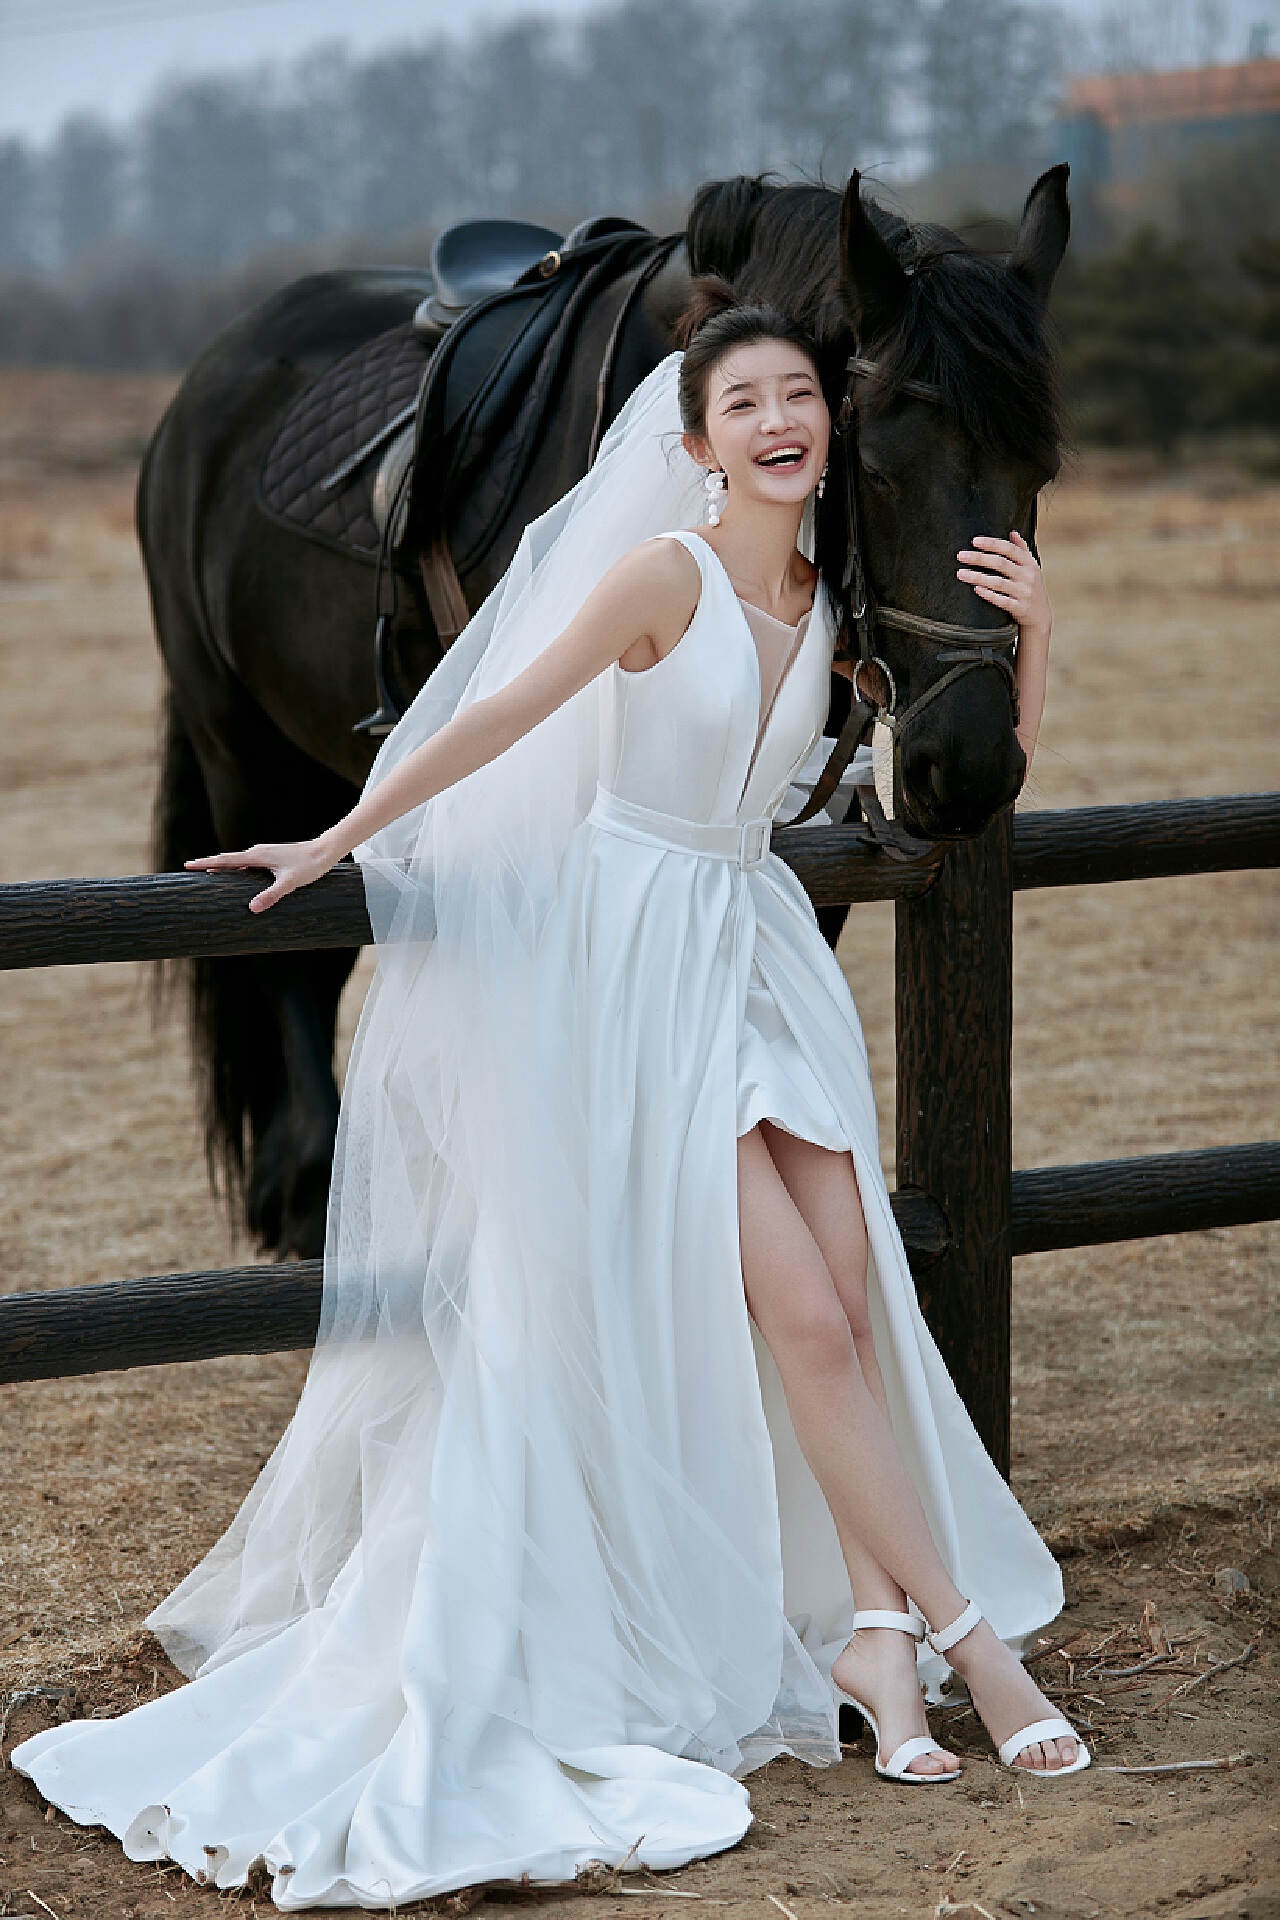 马场婚纱照|浪漫到骨子里的轻旅纪实影像 北京婚纱摄影工作室